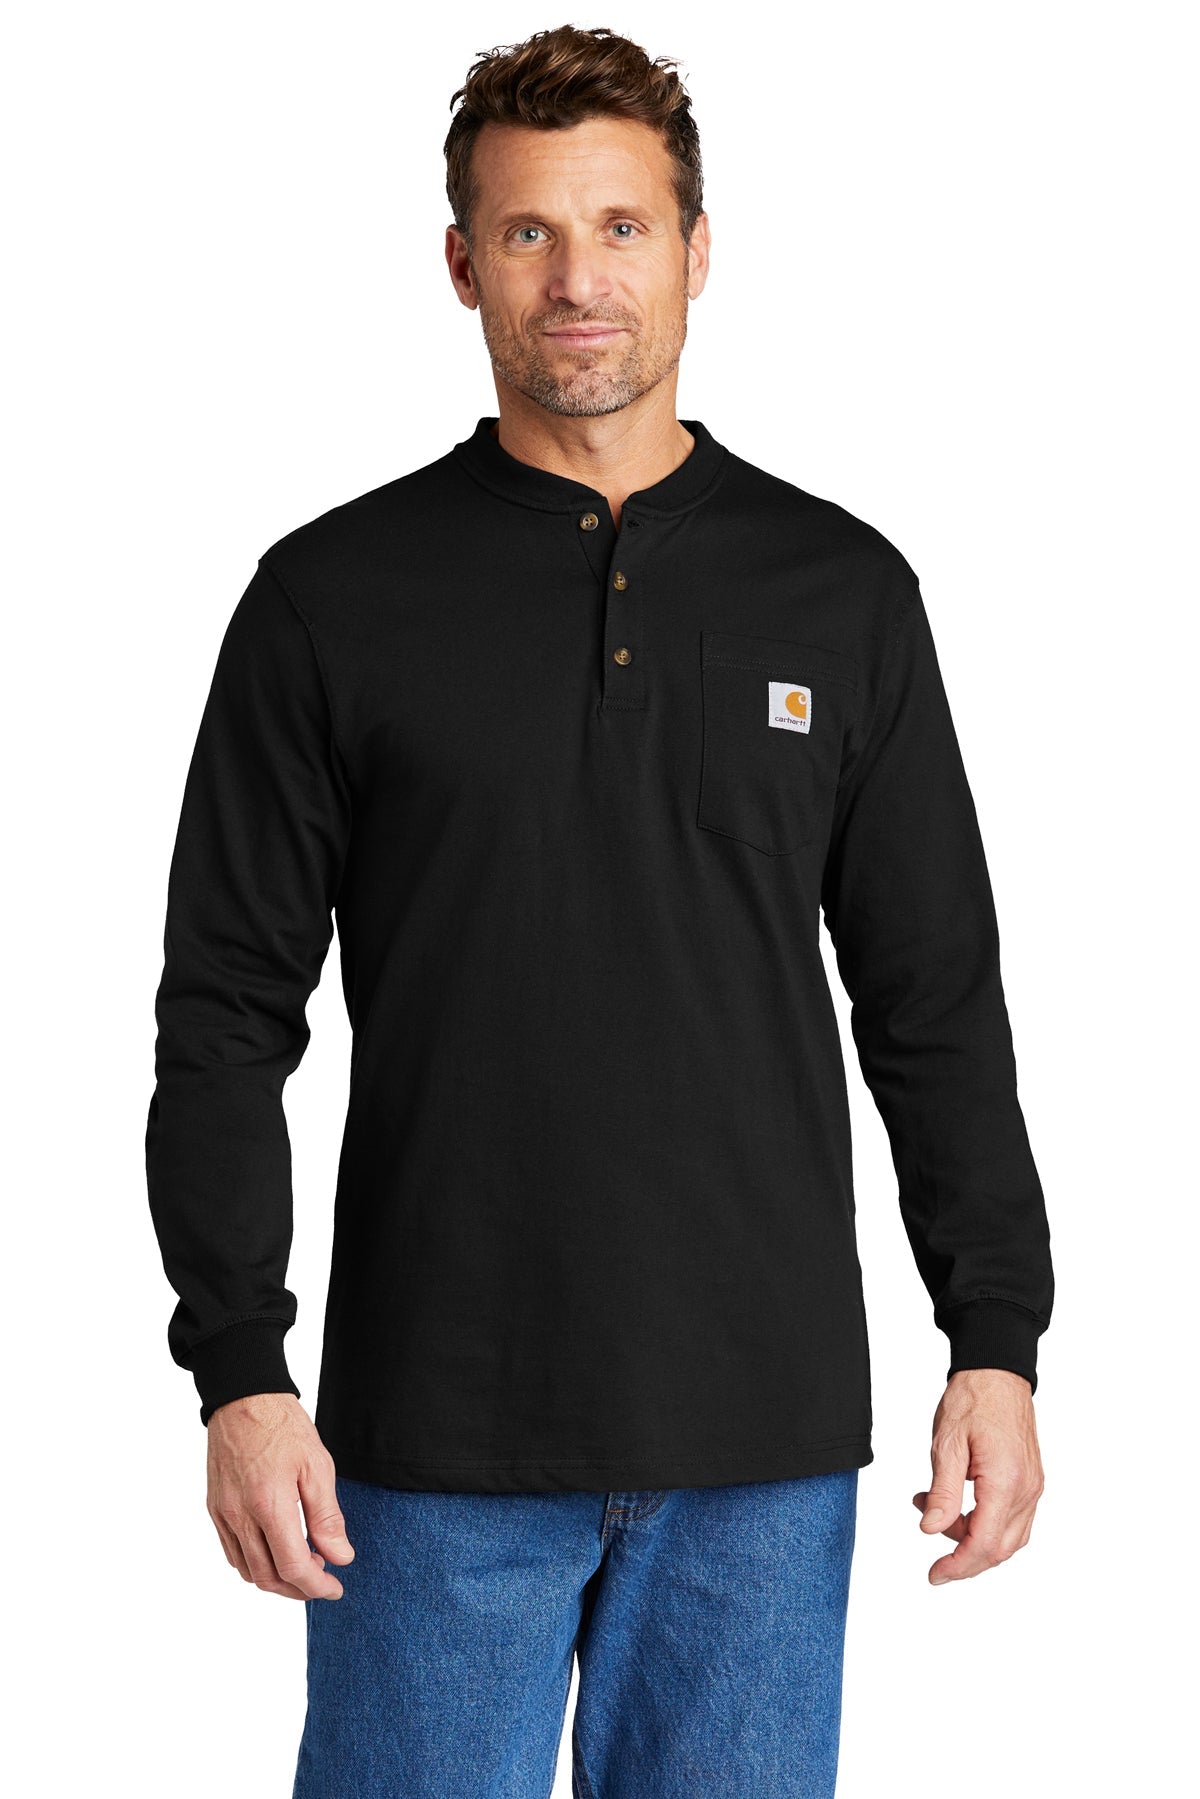 CTK128 Carhartt Long Sleeve Henley T-Shirt